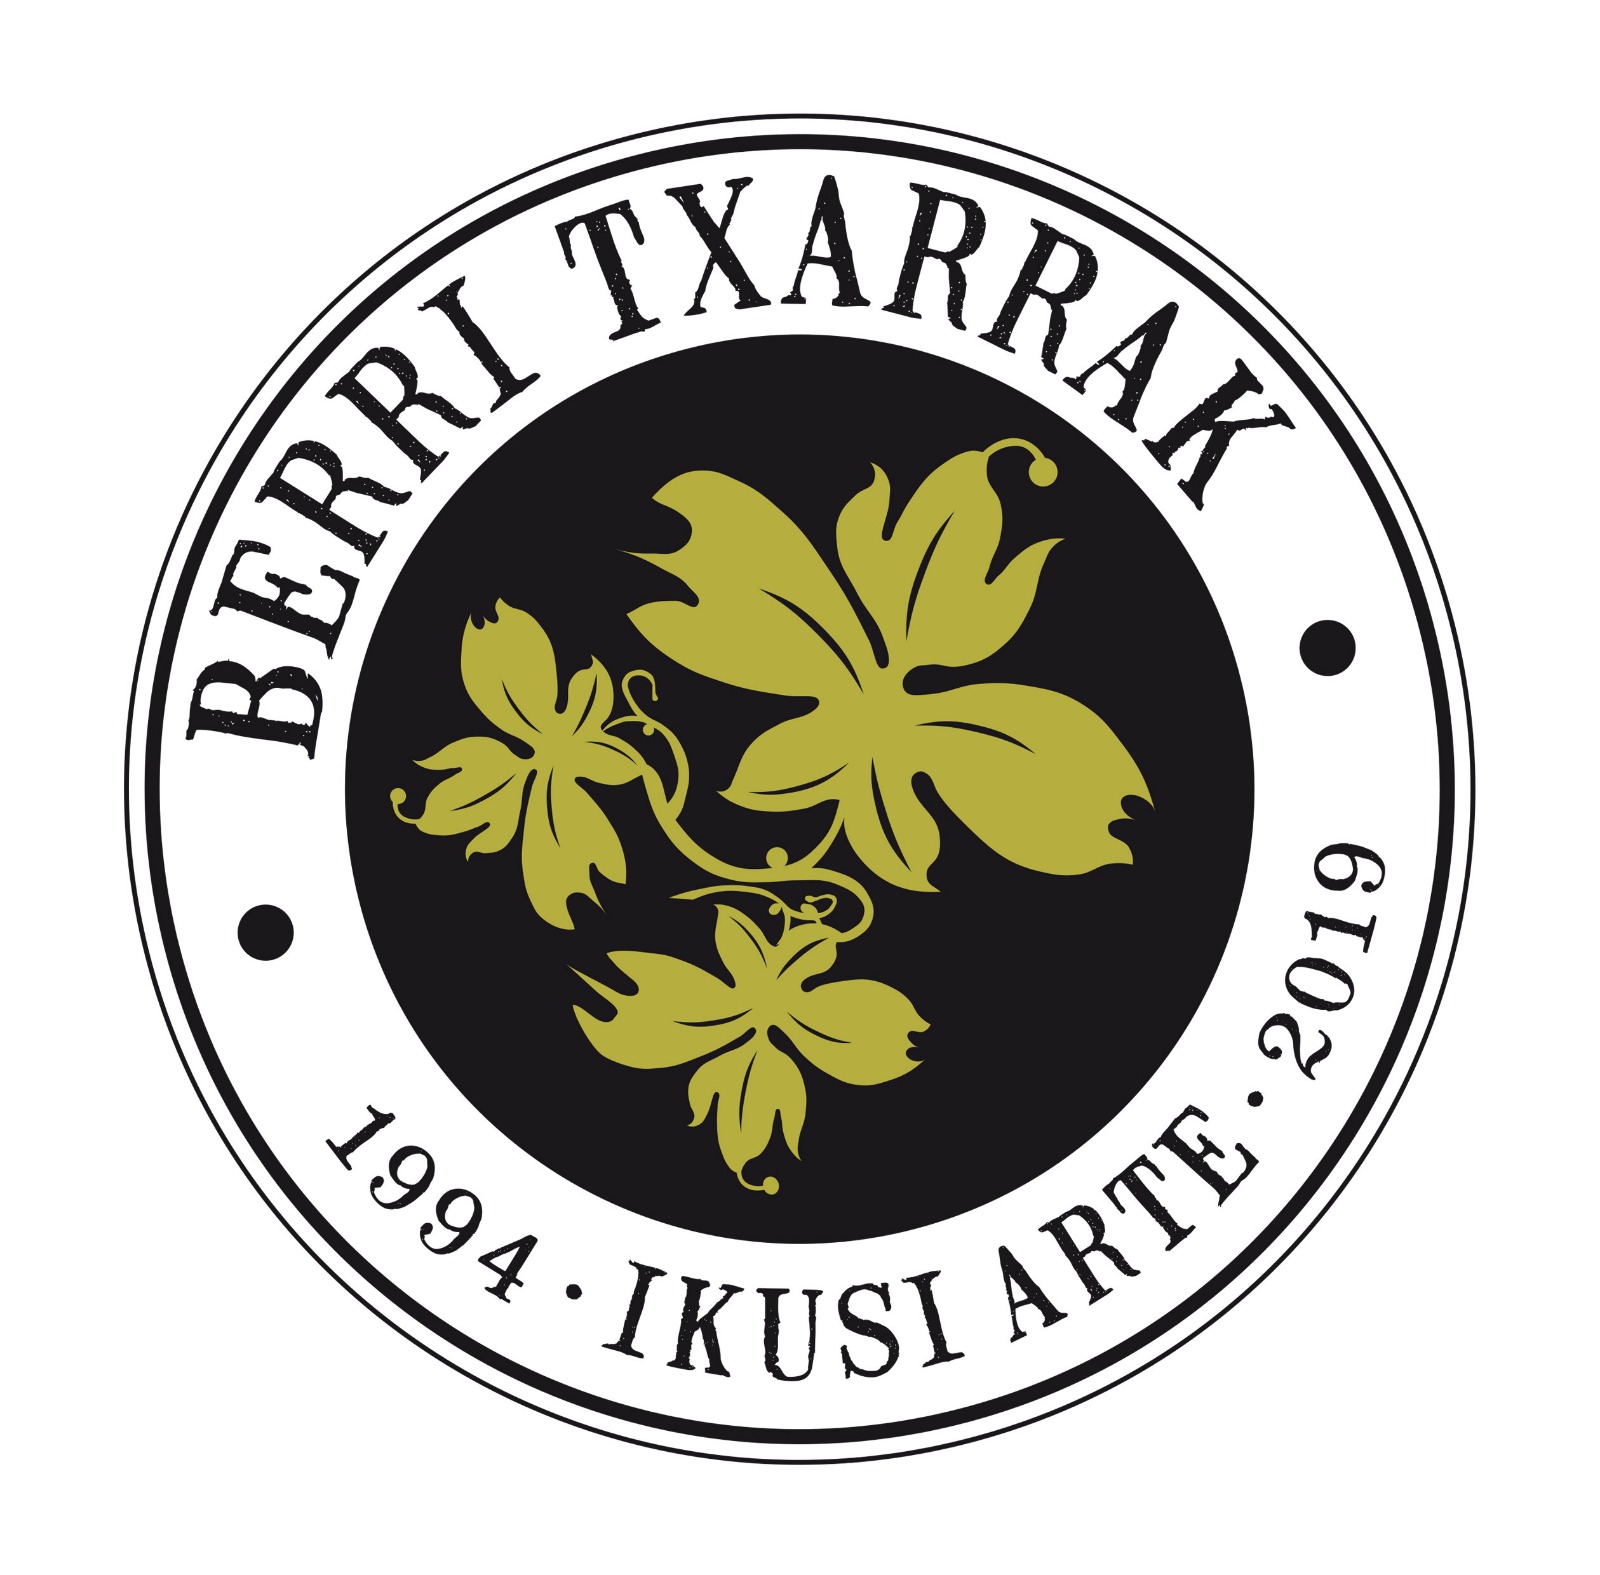 BERRI TXARRAK: IKUSI ARTE (1994-2019)